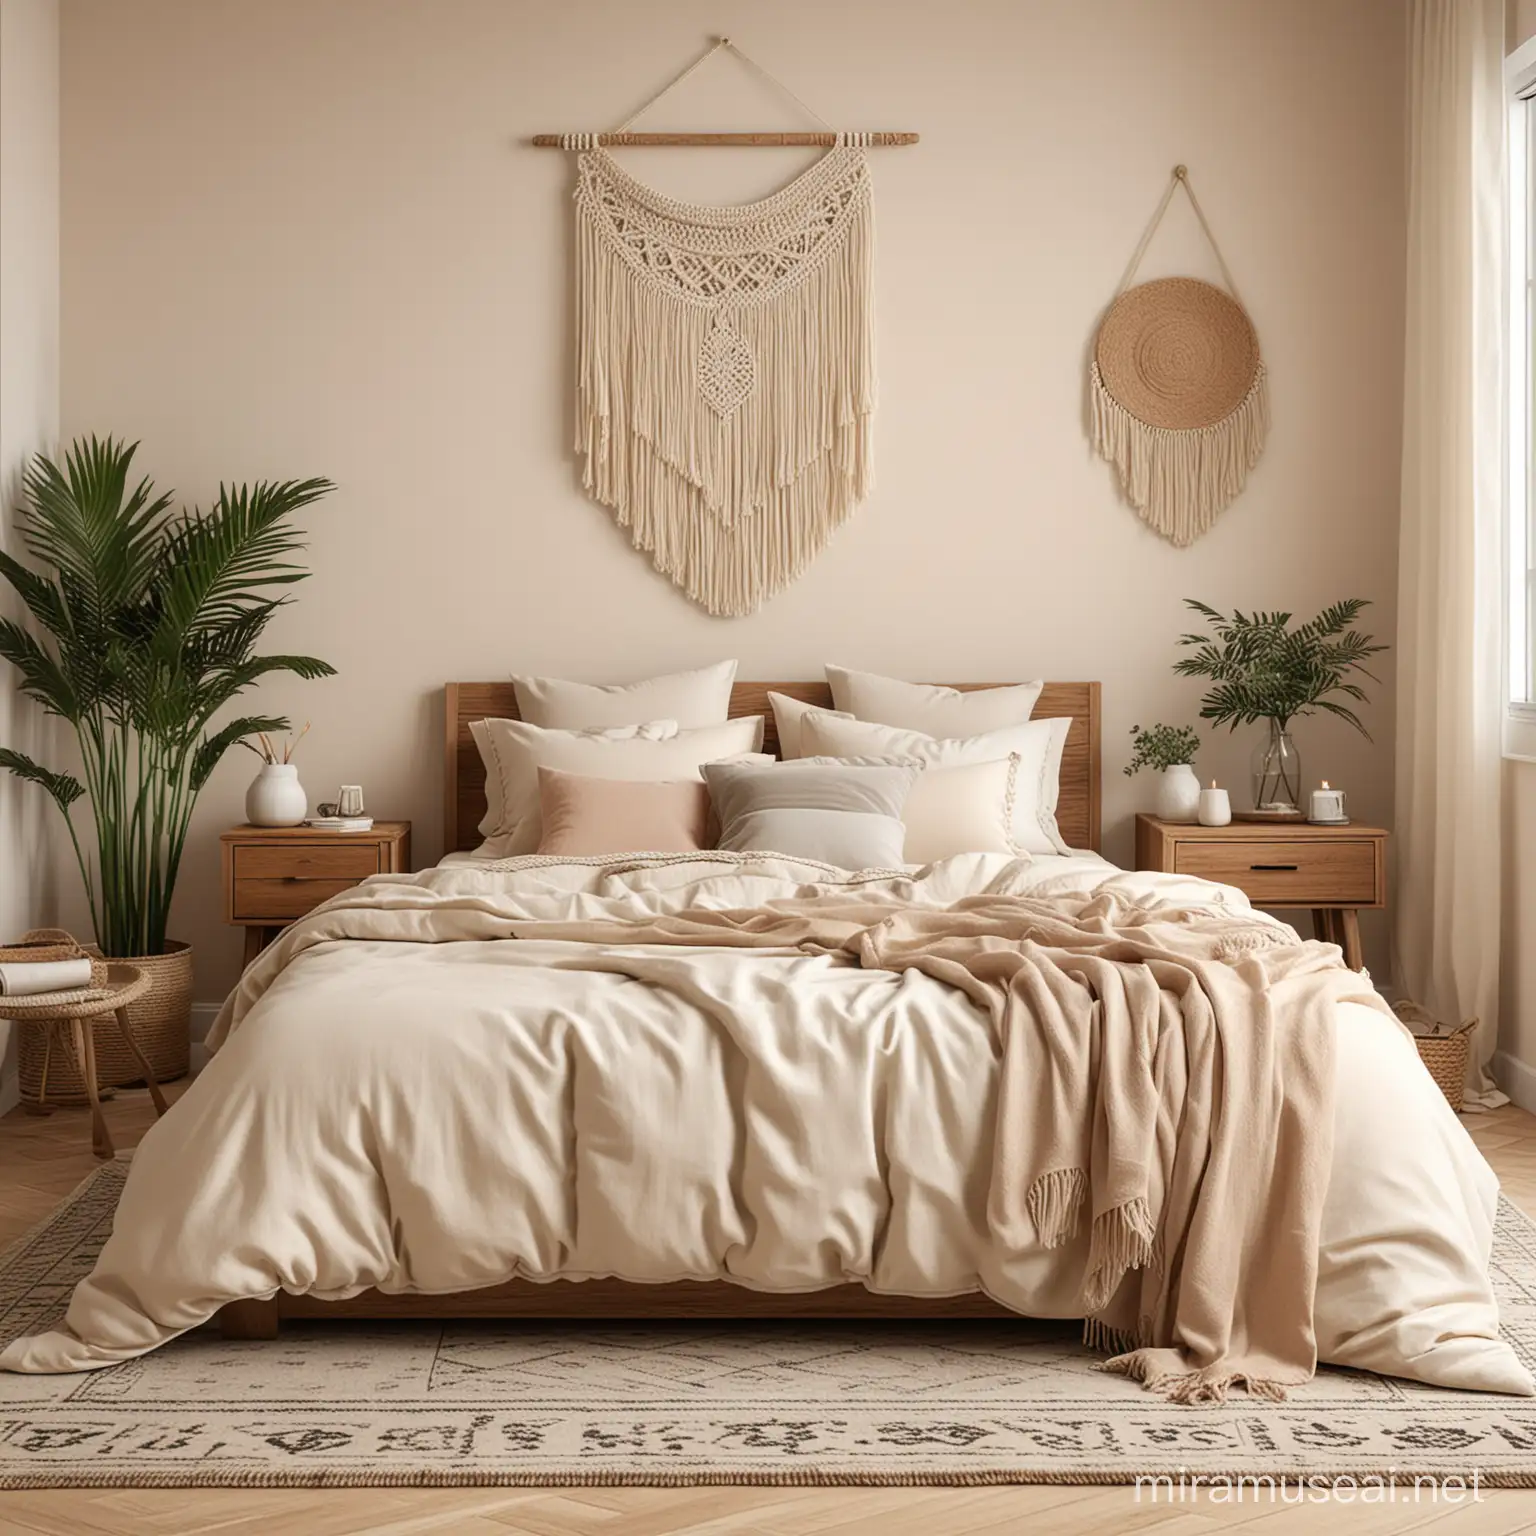 Boho Bedroom Mockup in Cream Color with Cozy Decor